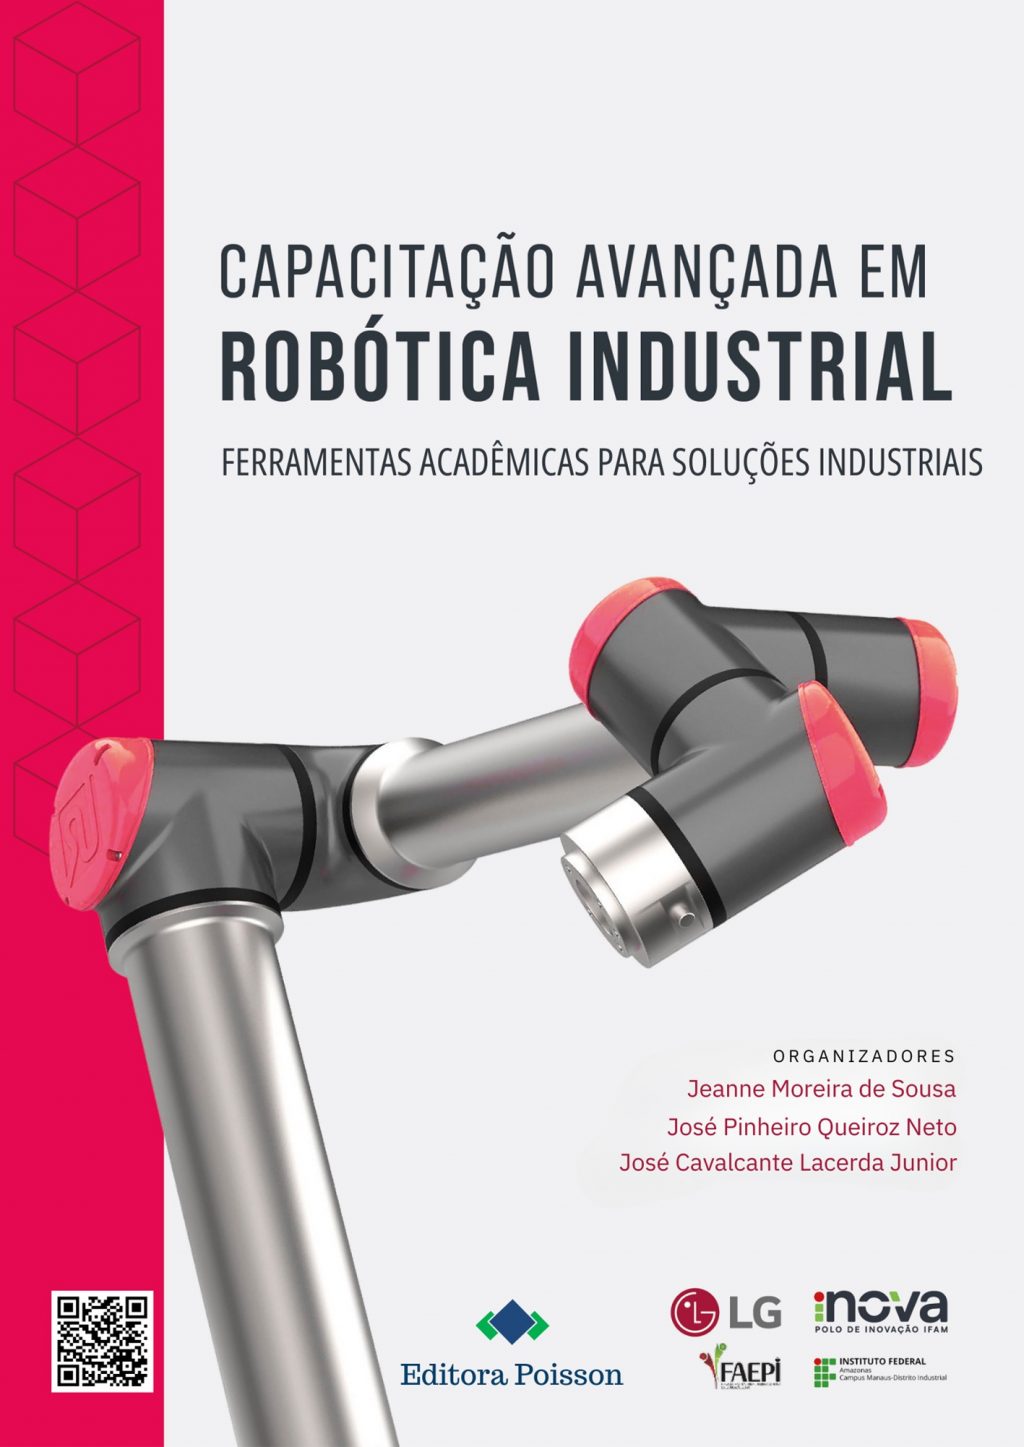 Capacitação avançada em robótica industrial: ferramentas acadêmicas para soluções industriais